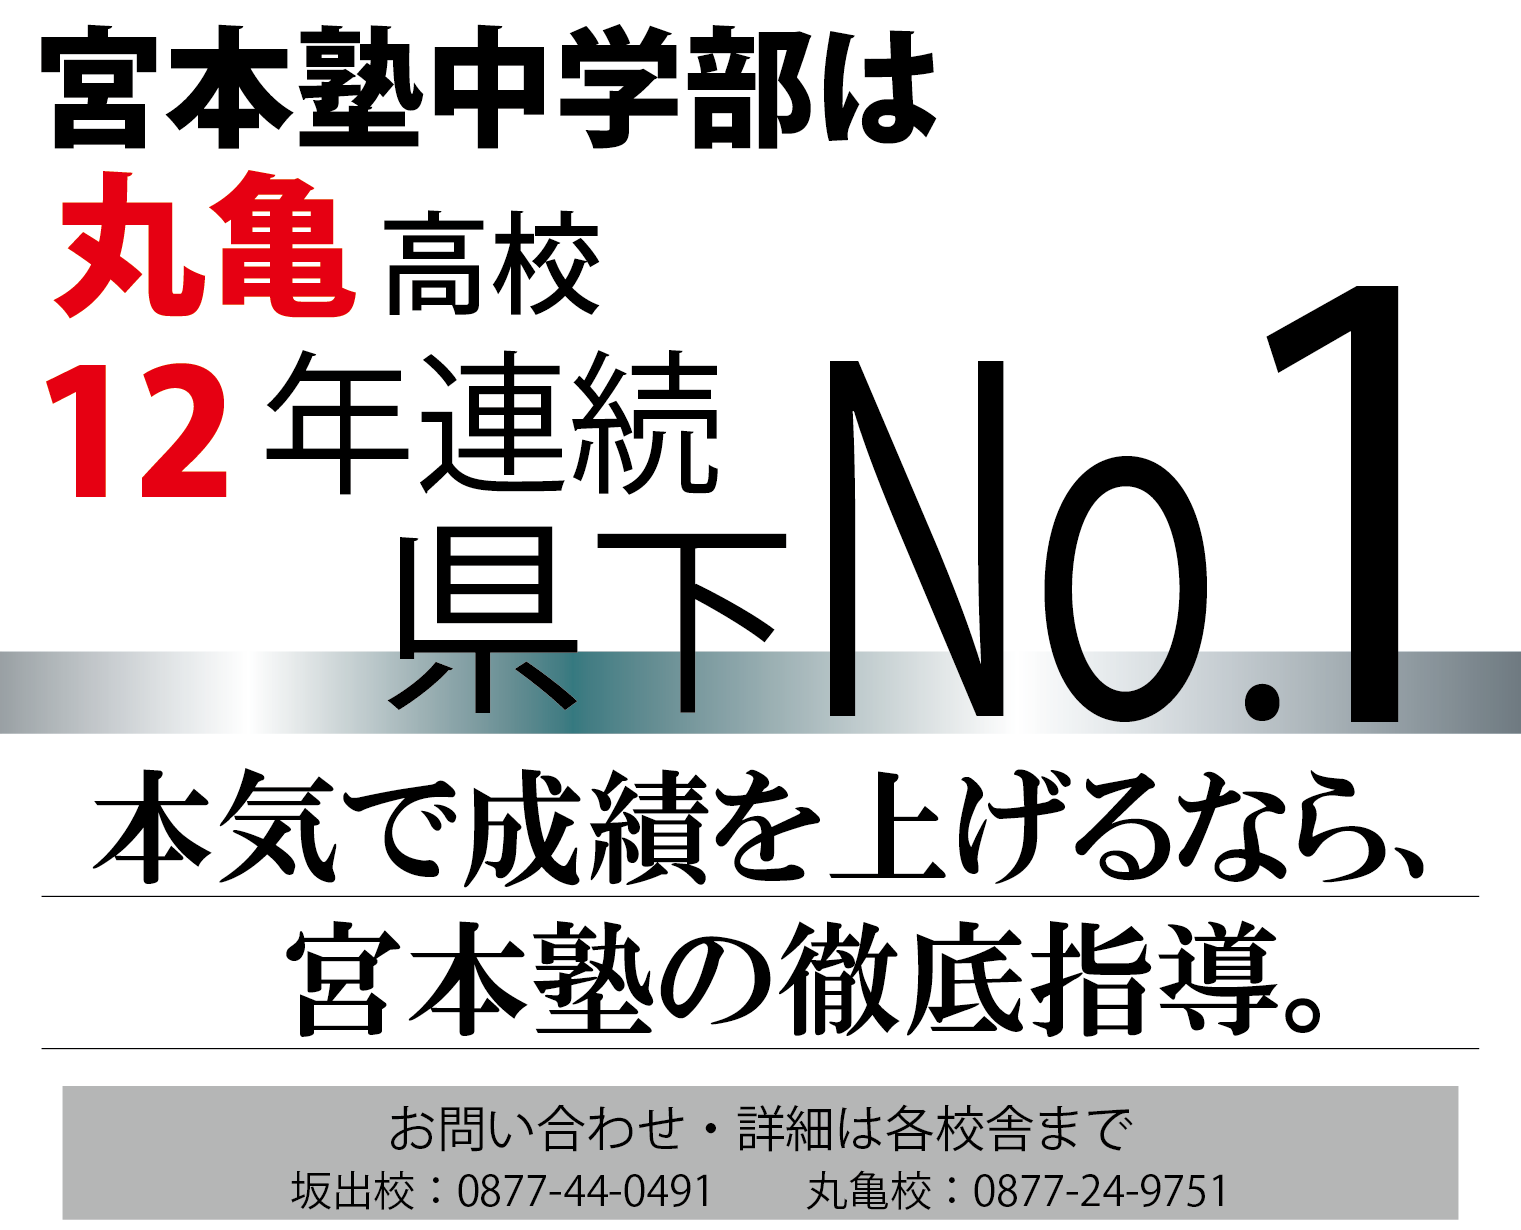 宮本塾中学部は、丸亀高校合格者数12年連続県下No.1 本気で成績を上げるなら、宮本塾の徹底指導。